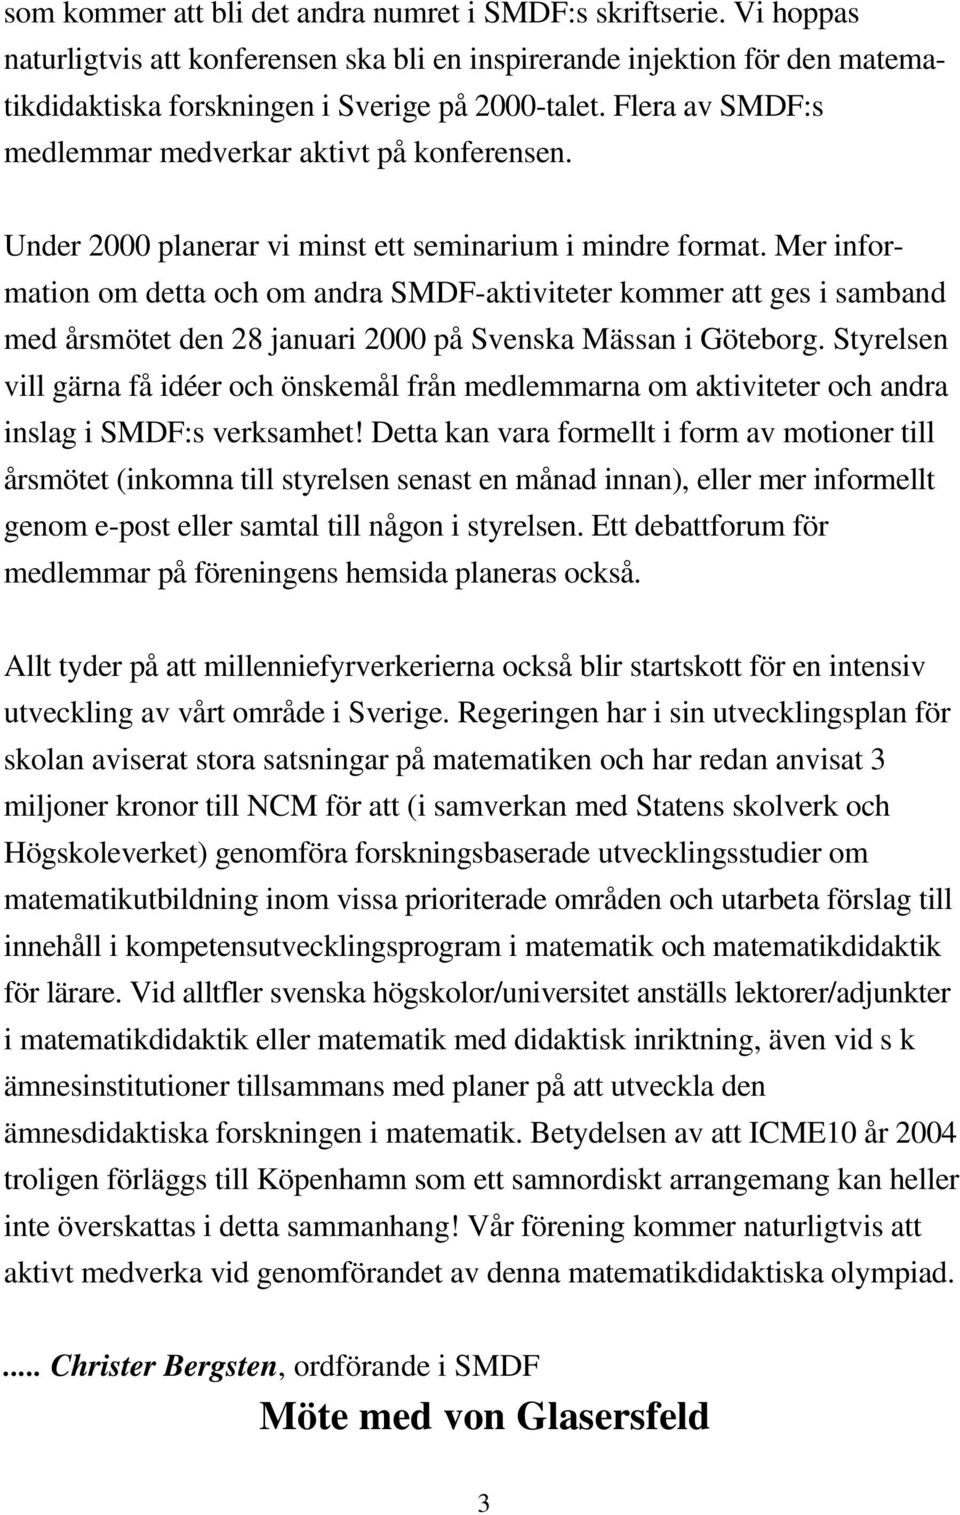 Mer information om detta och om andra SMDF-aktiviteter kommer att ges i samband med årsmötet den 28 januari 2000 på Svenska Mässan i Göteborg.